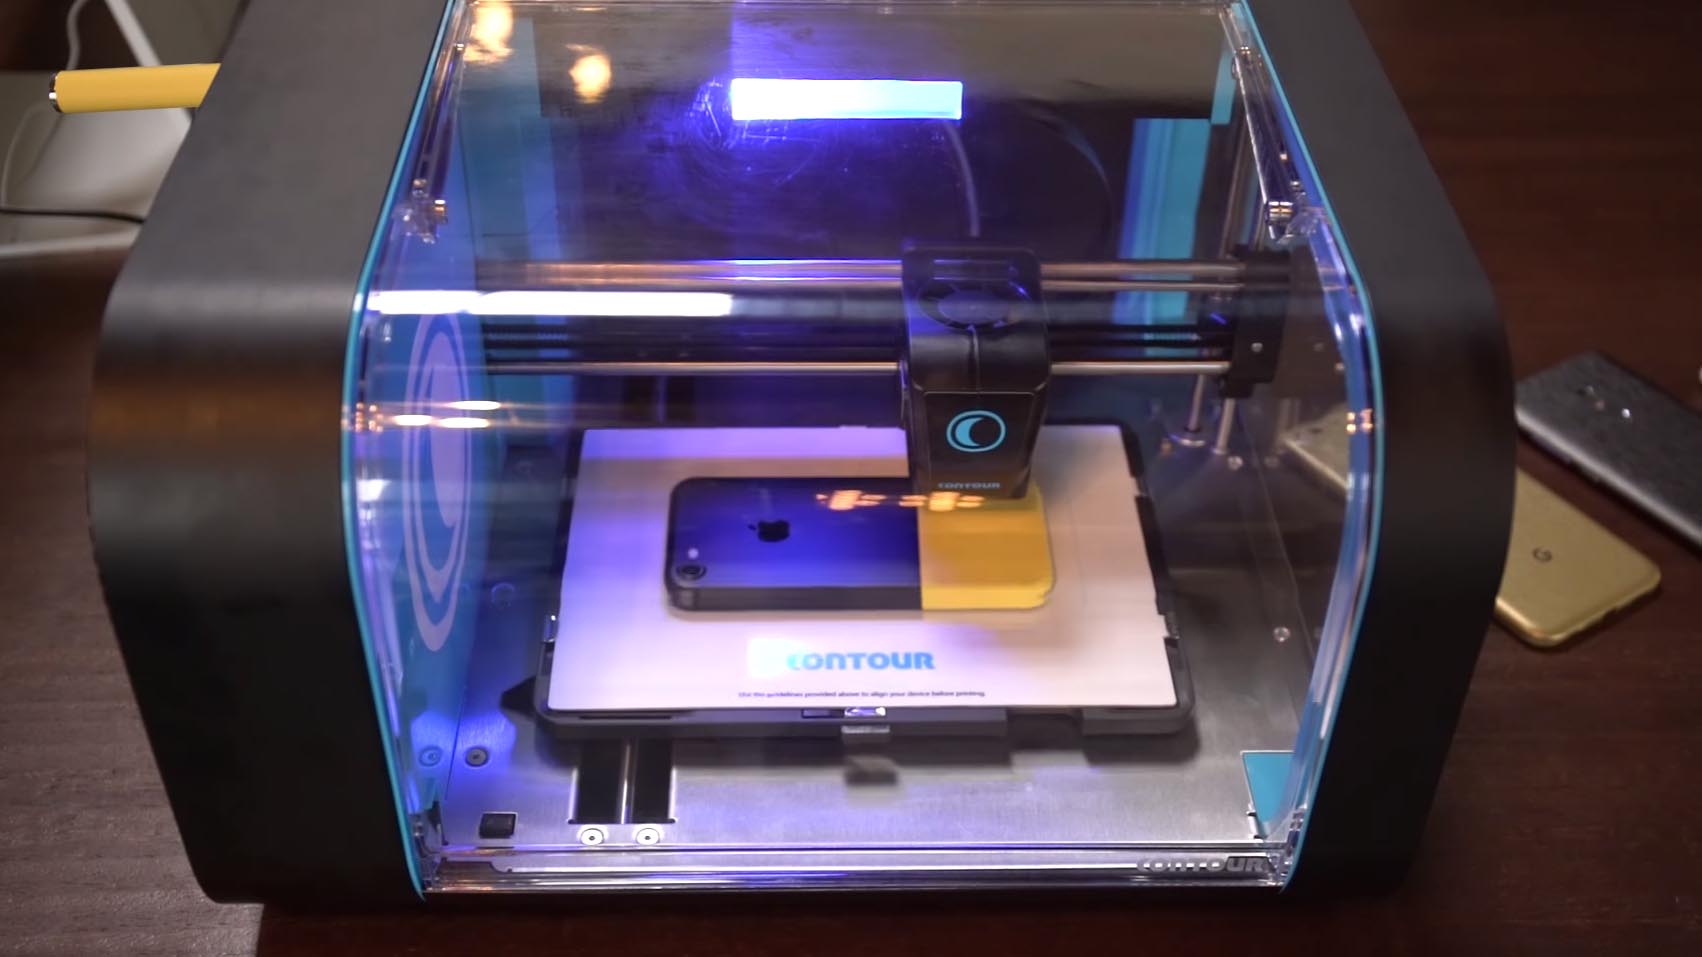 stampante per smartphone con bluetooth